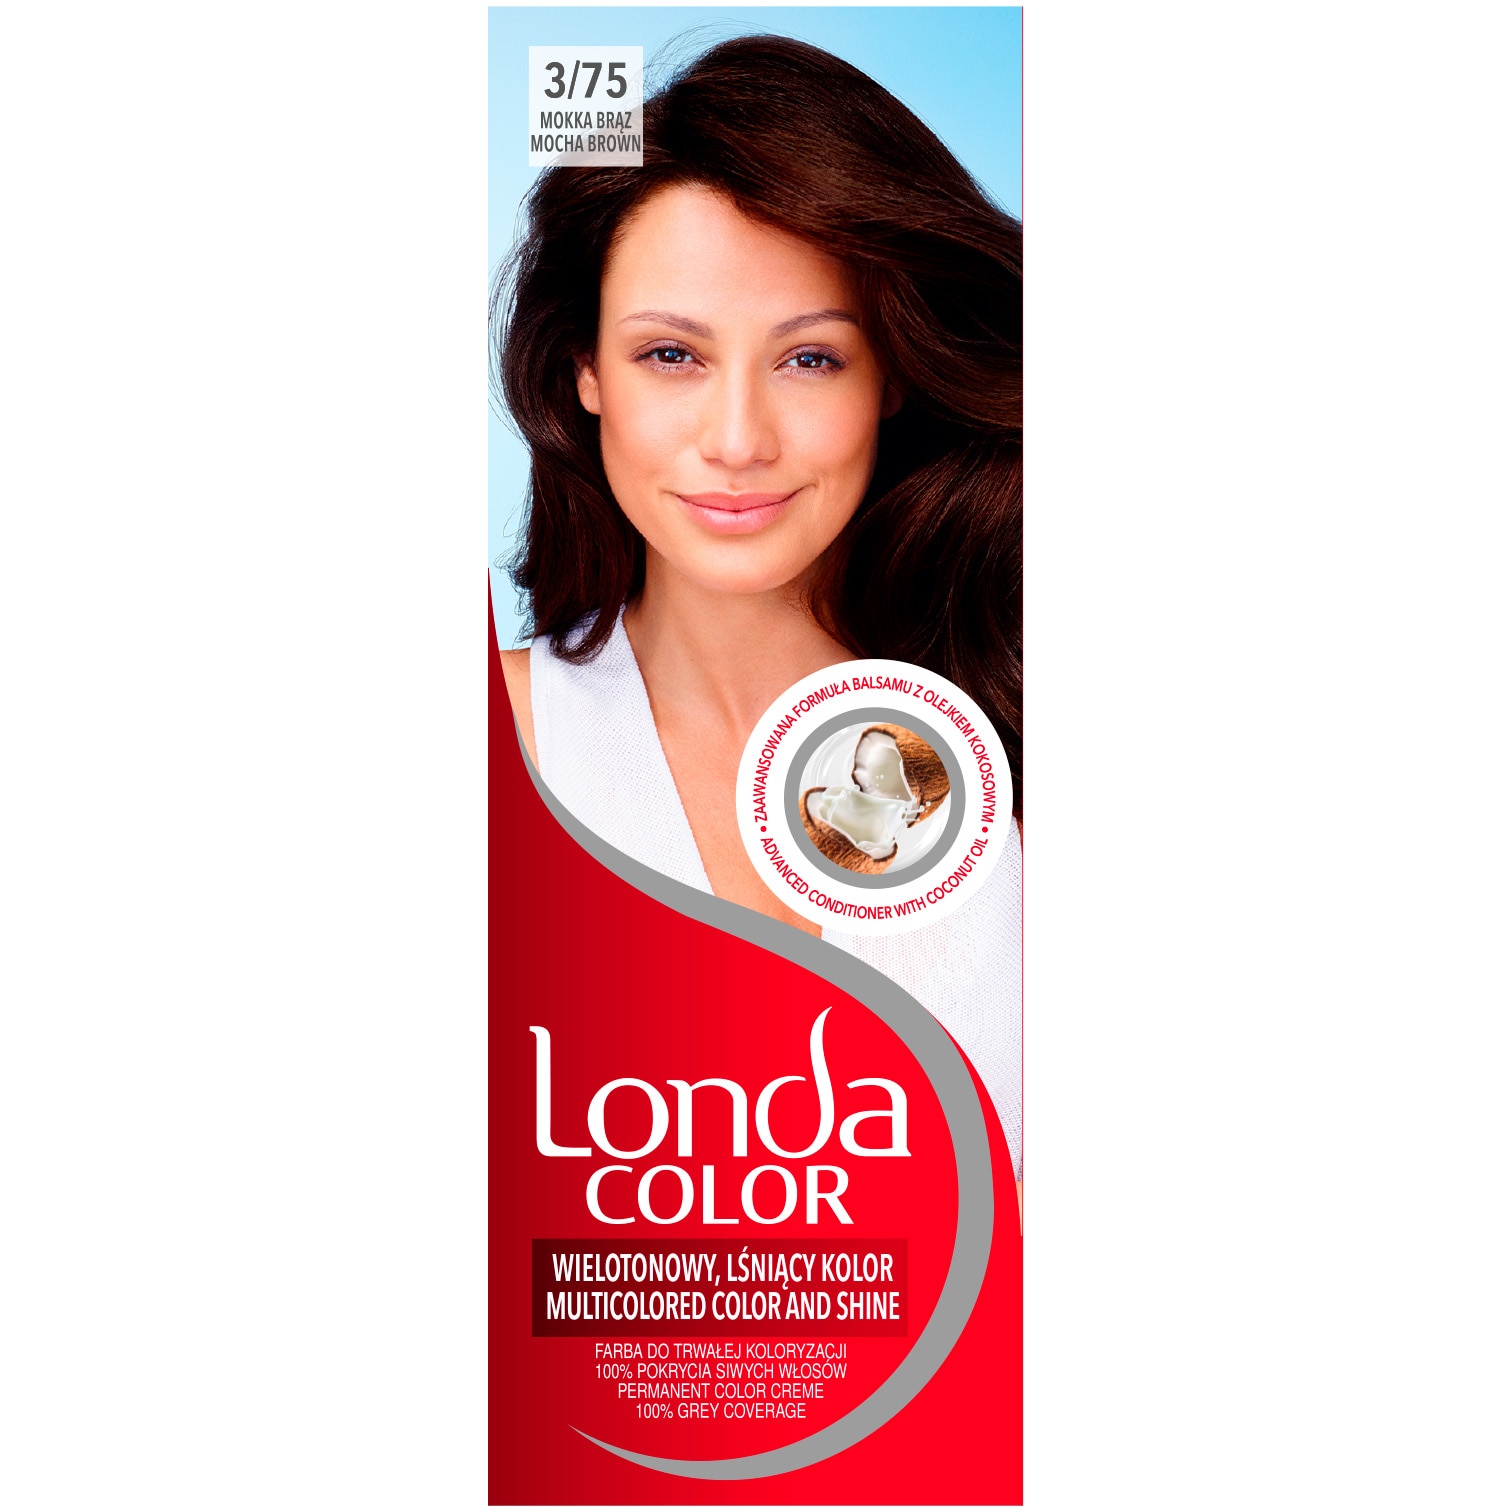 Лонда для крашенных волос в домашних условиях